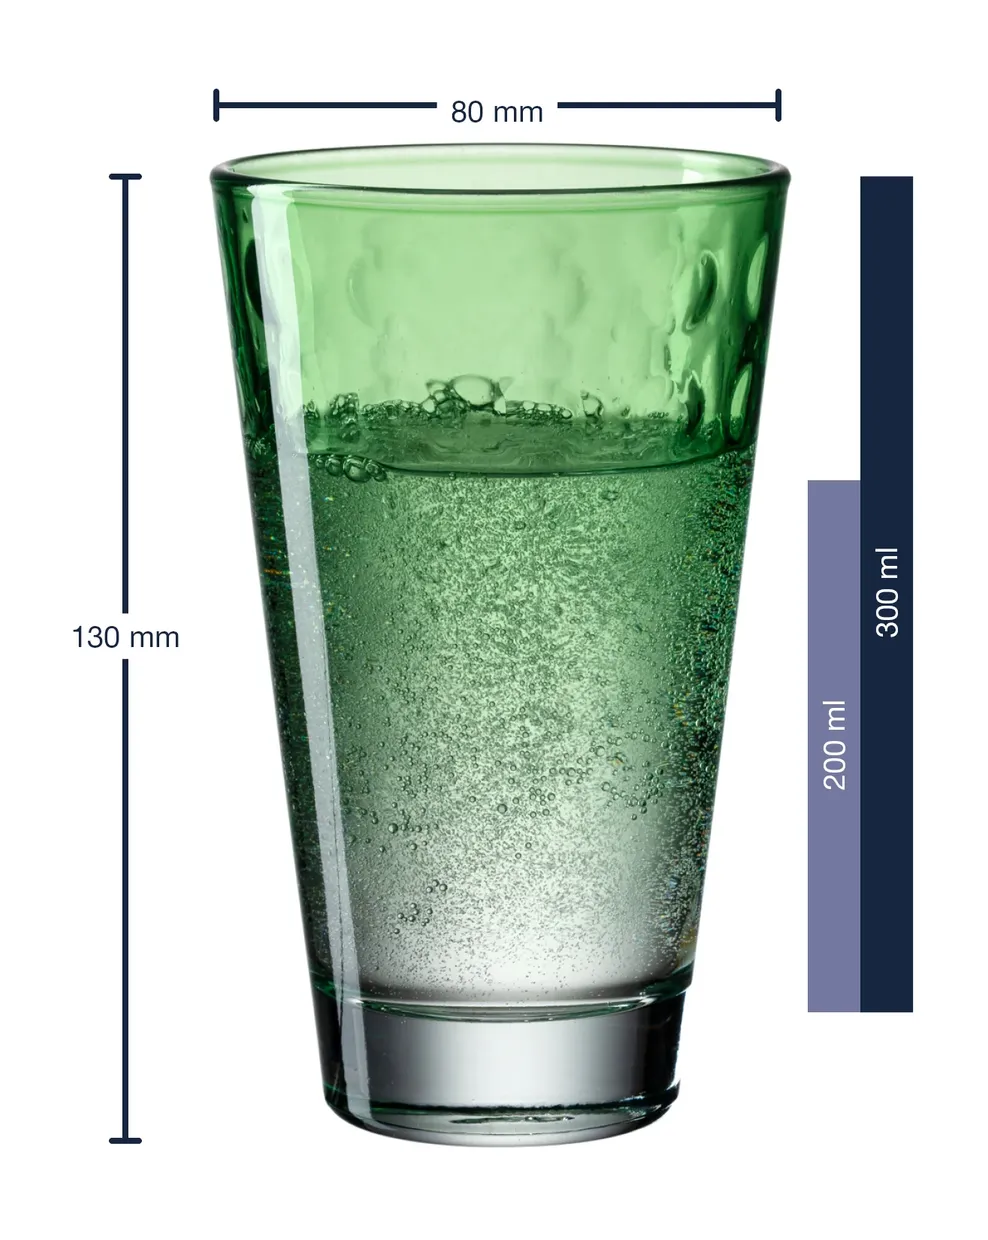 Longdrinkglas pastel licht groen 300ml - Optic